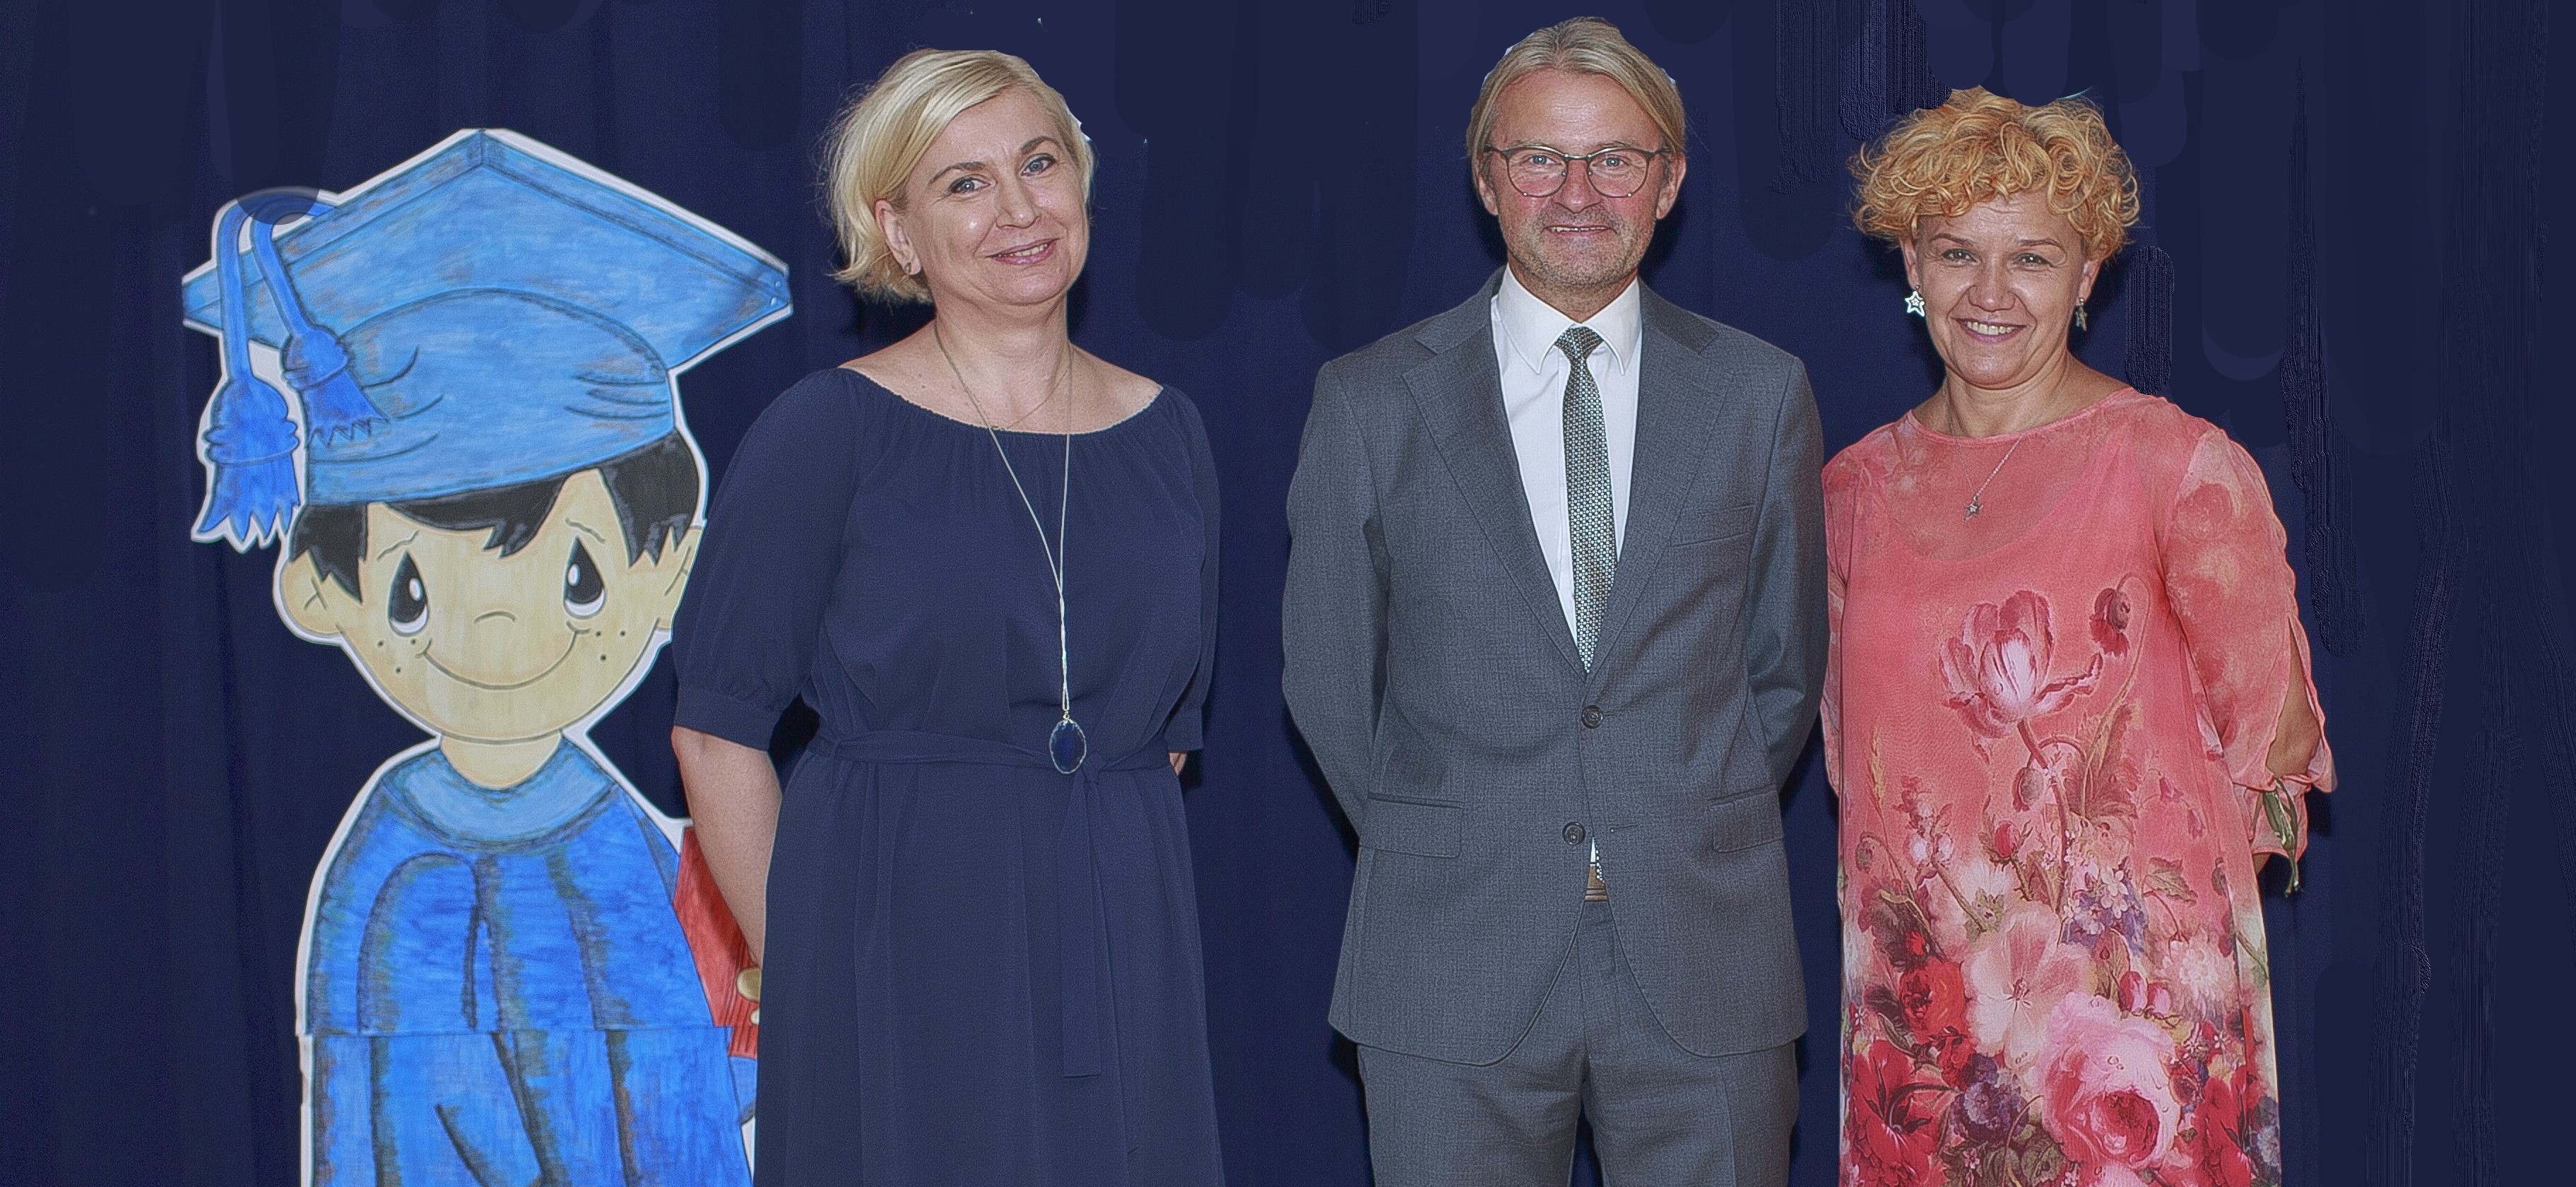 pośrodku dyrektor szkoły - mgr Grzegorz Kuczera, po lewej wicedyrektor - mgr Romana Baron, po prawej wicedyrektor - mgr Beata Cieszewska